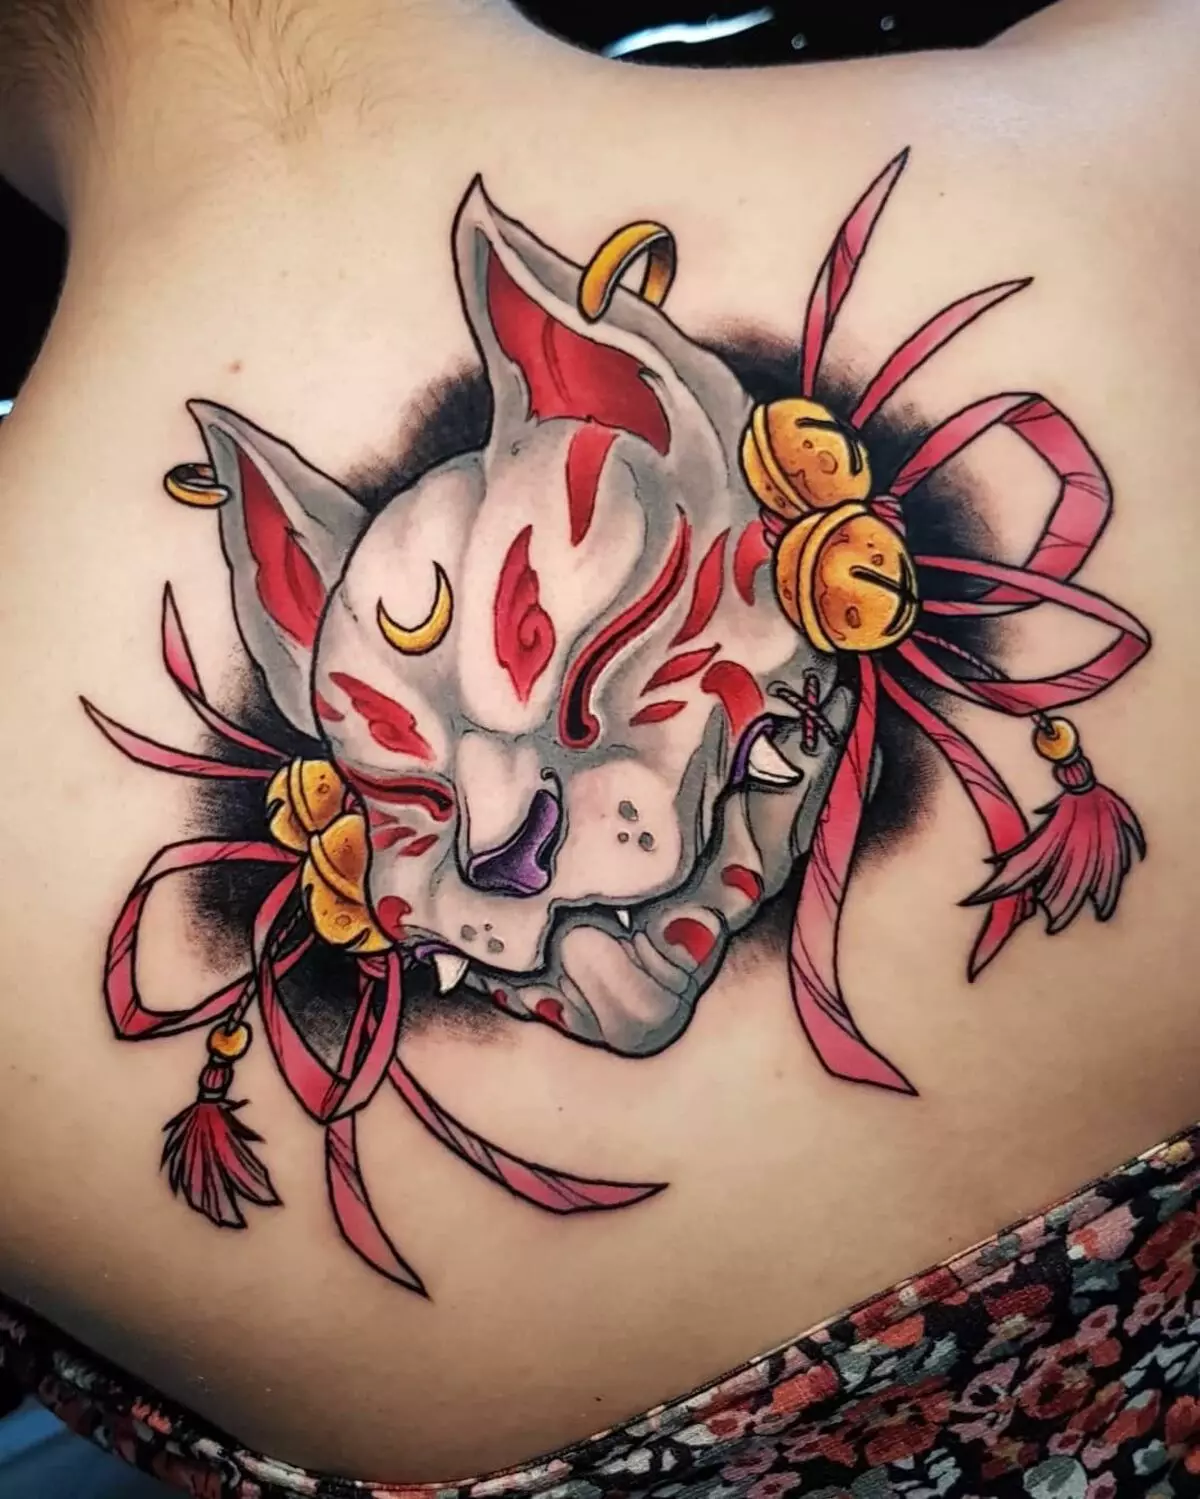 Tattoo Jaapani maskide kujul: deemonid ja nende tähendused. Tätoveeringute visandid Jaapani maskide stiilis. Tattoo 